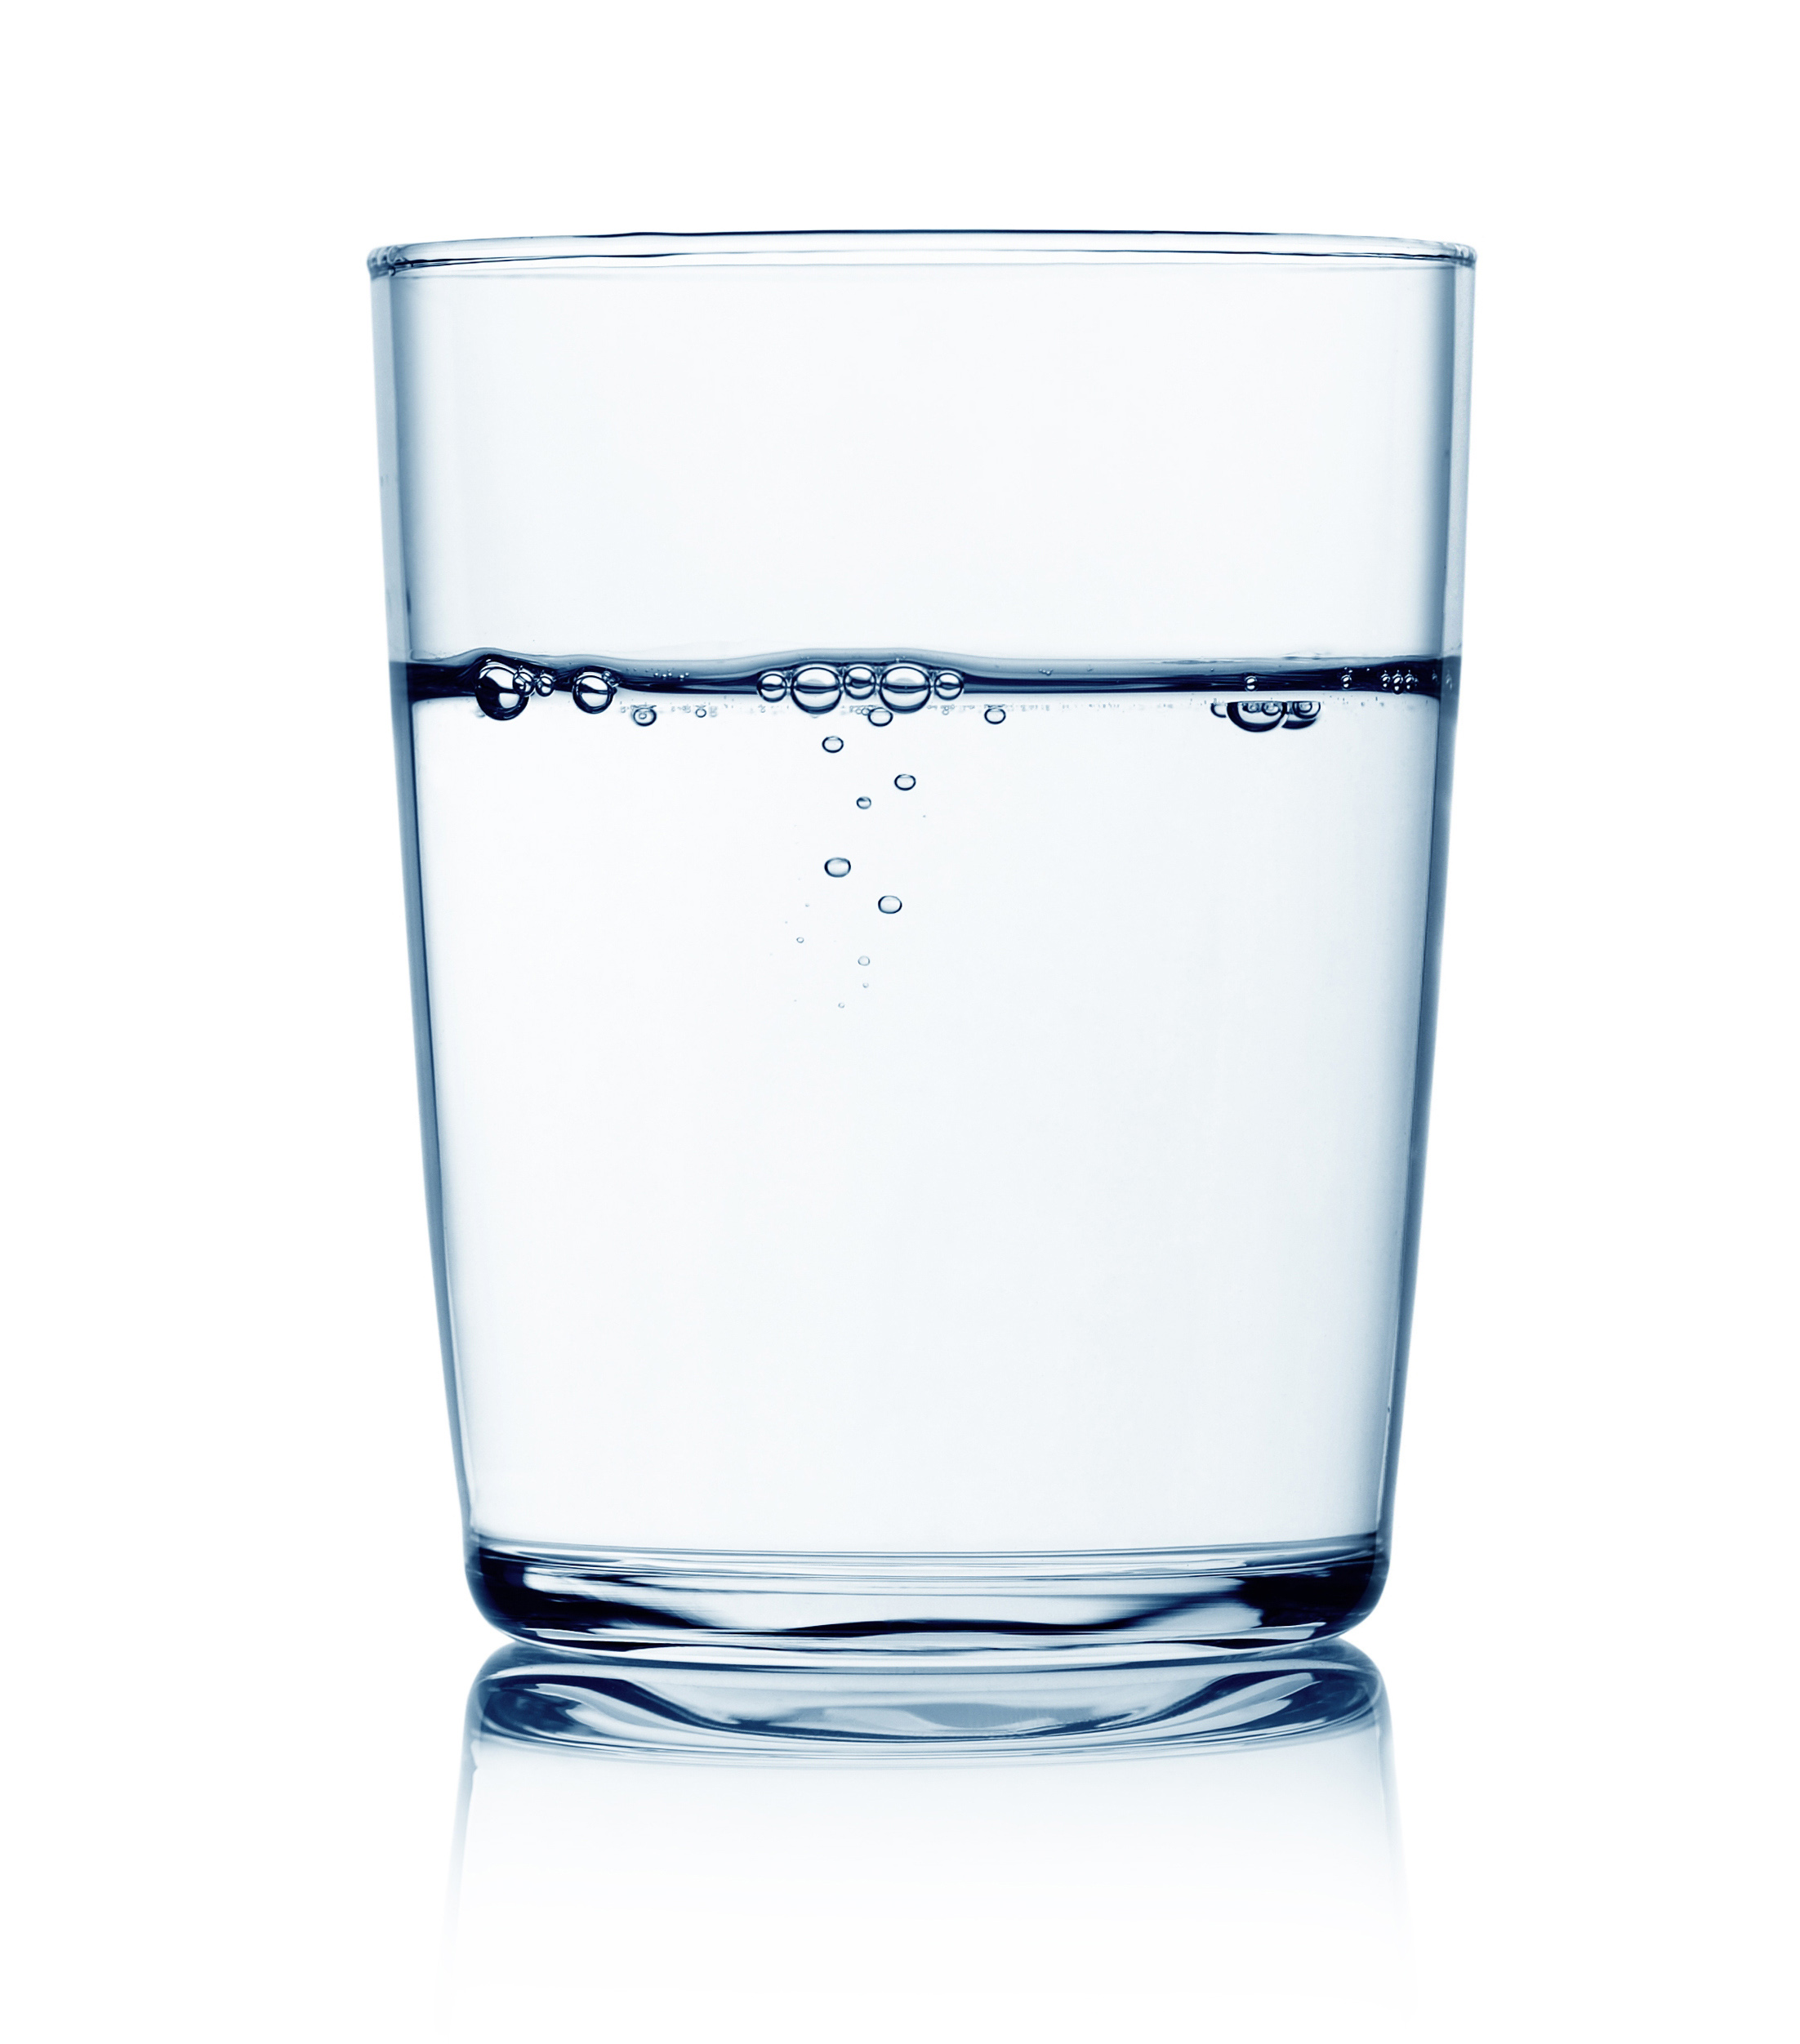 . PlusPng.com szklanka wody